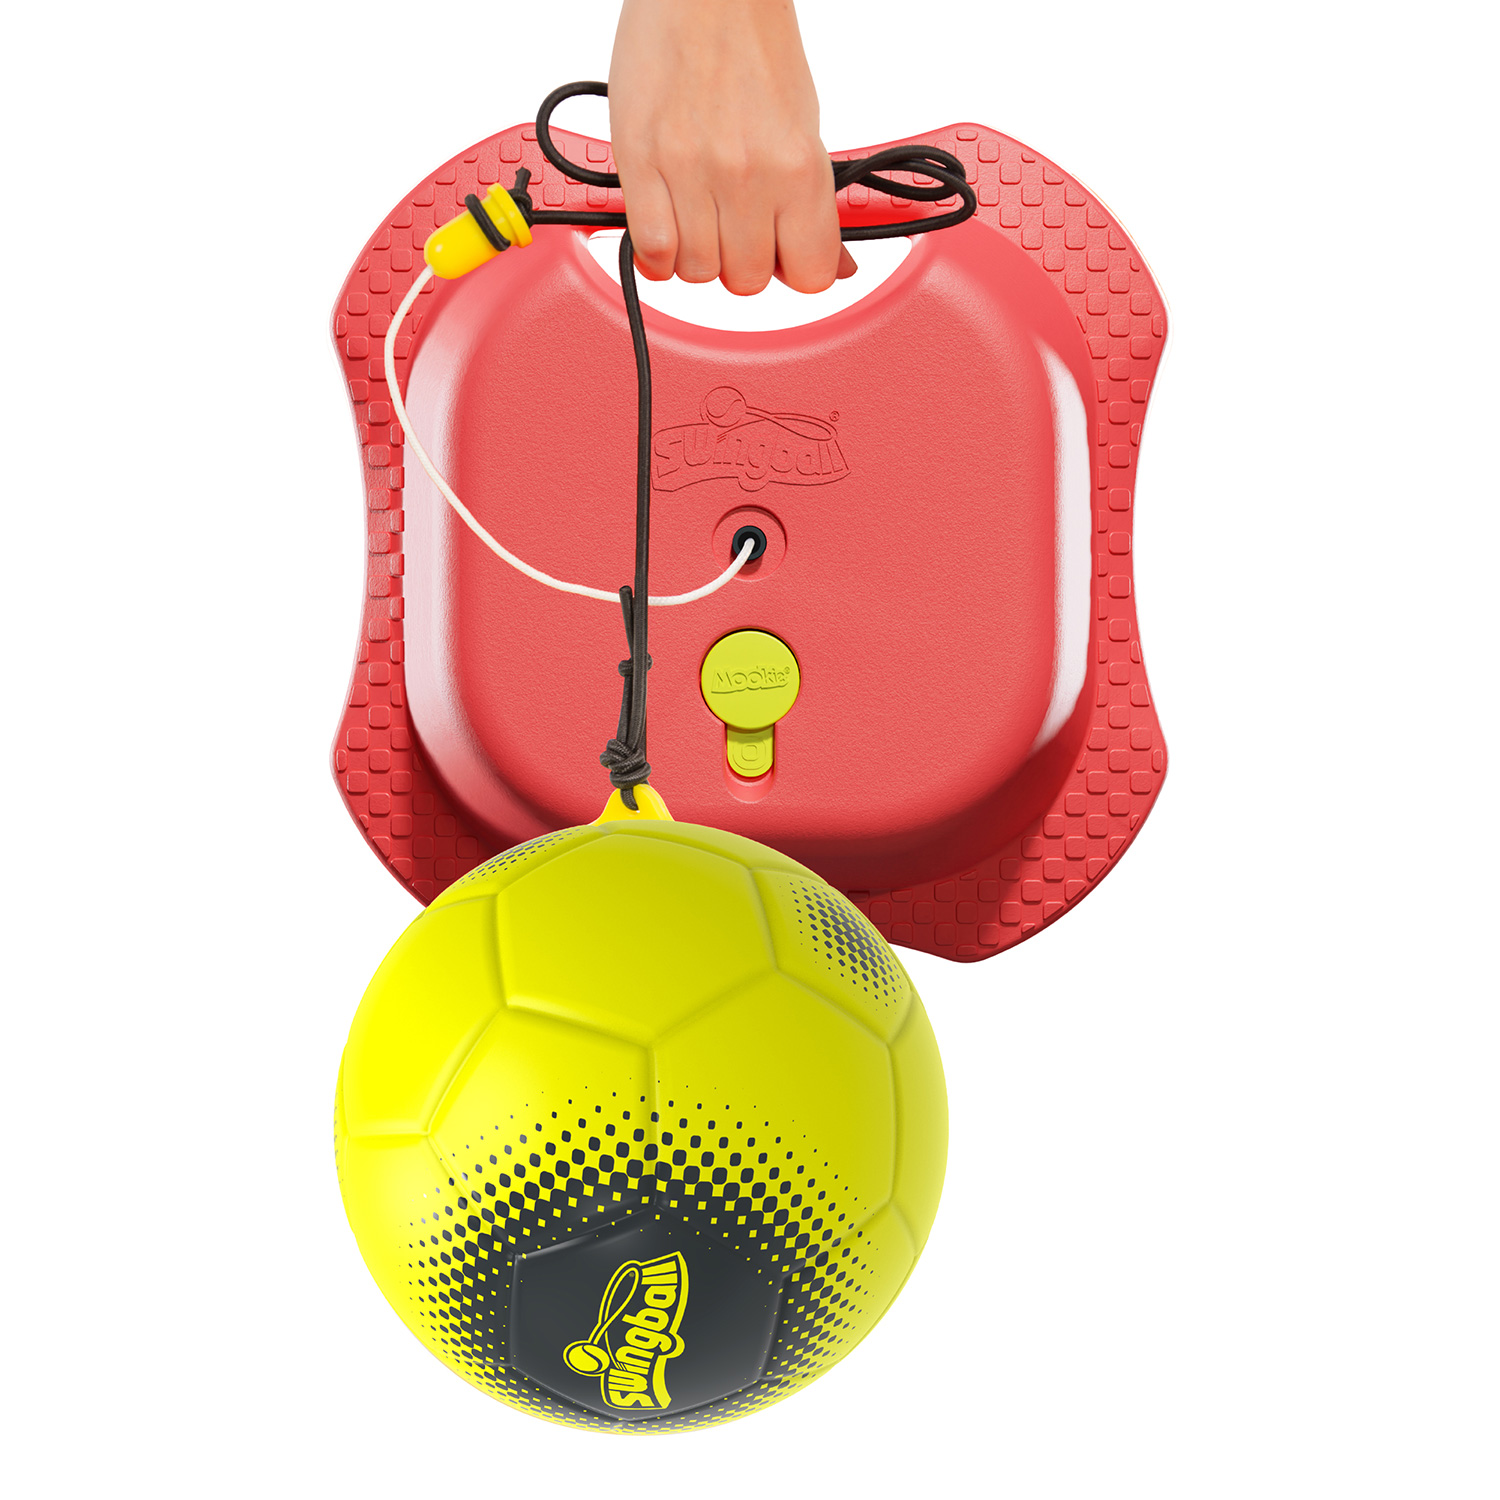 Swingball Reflex soccer game